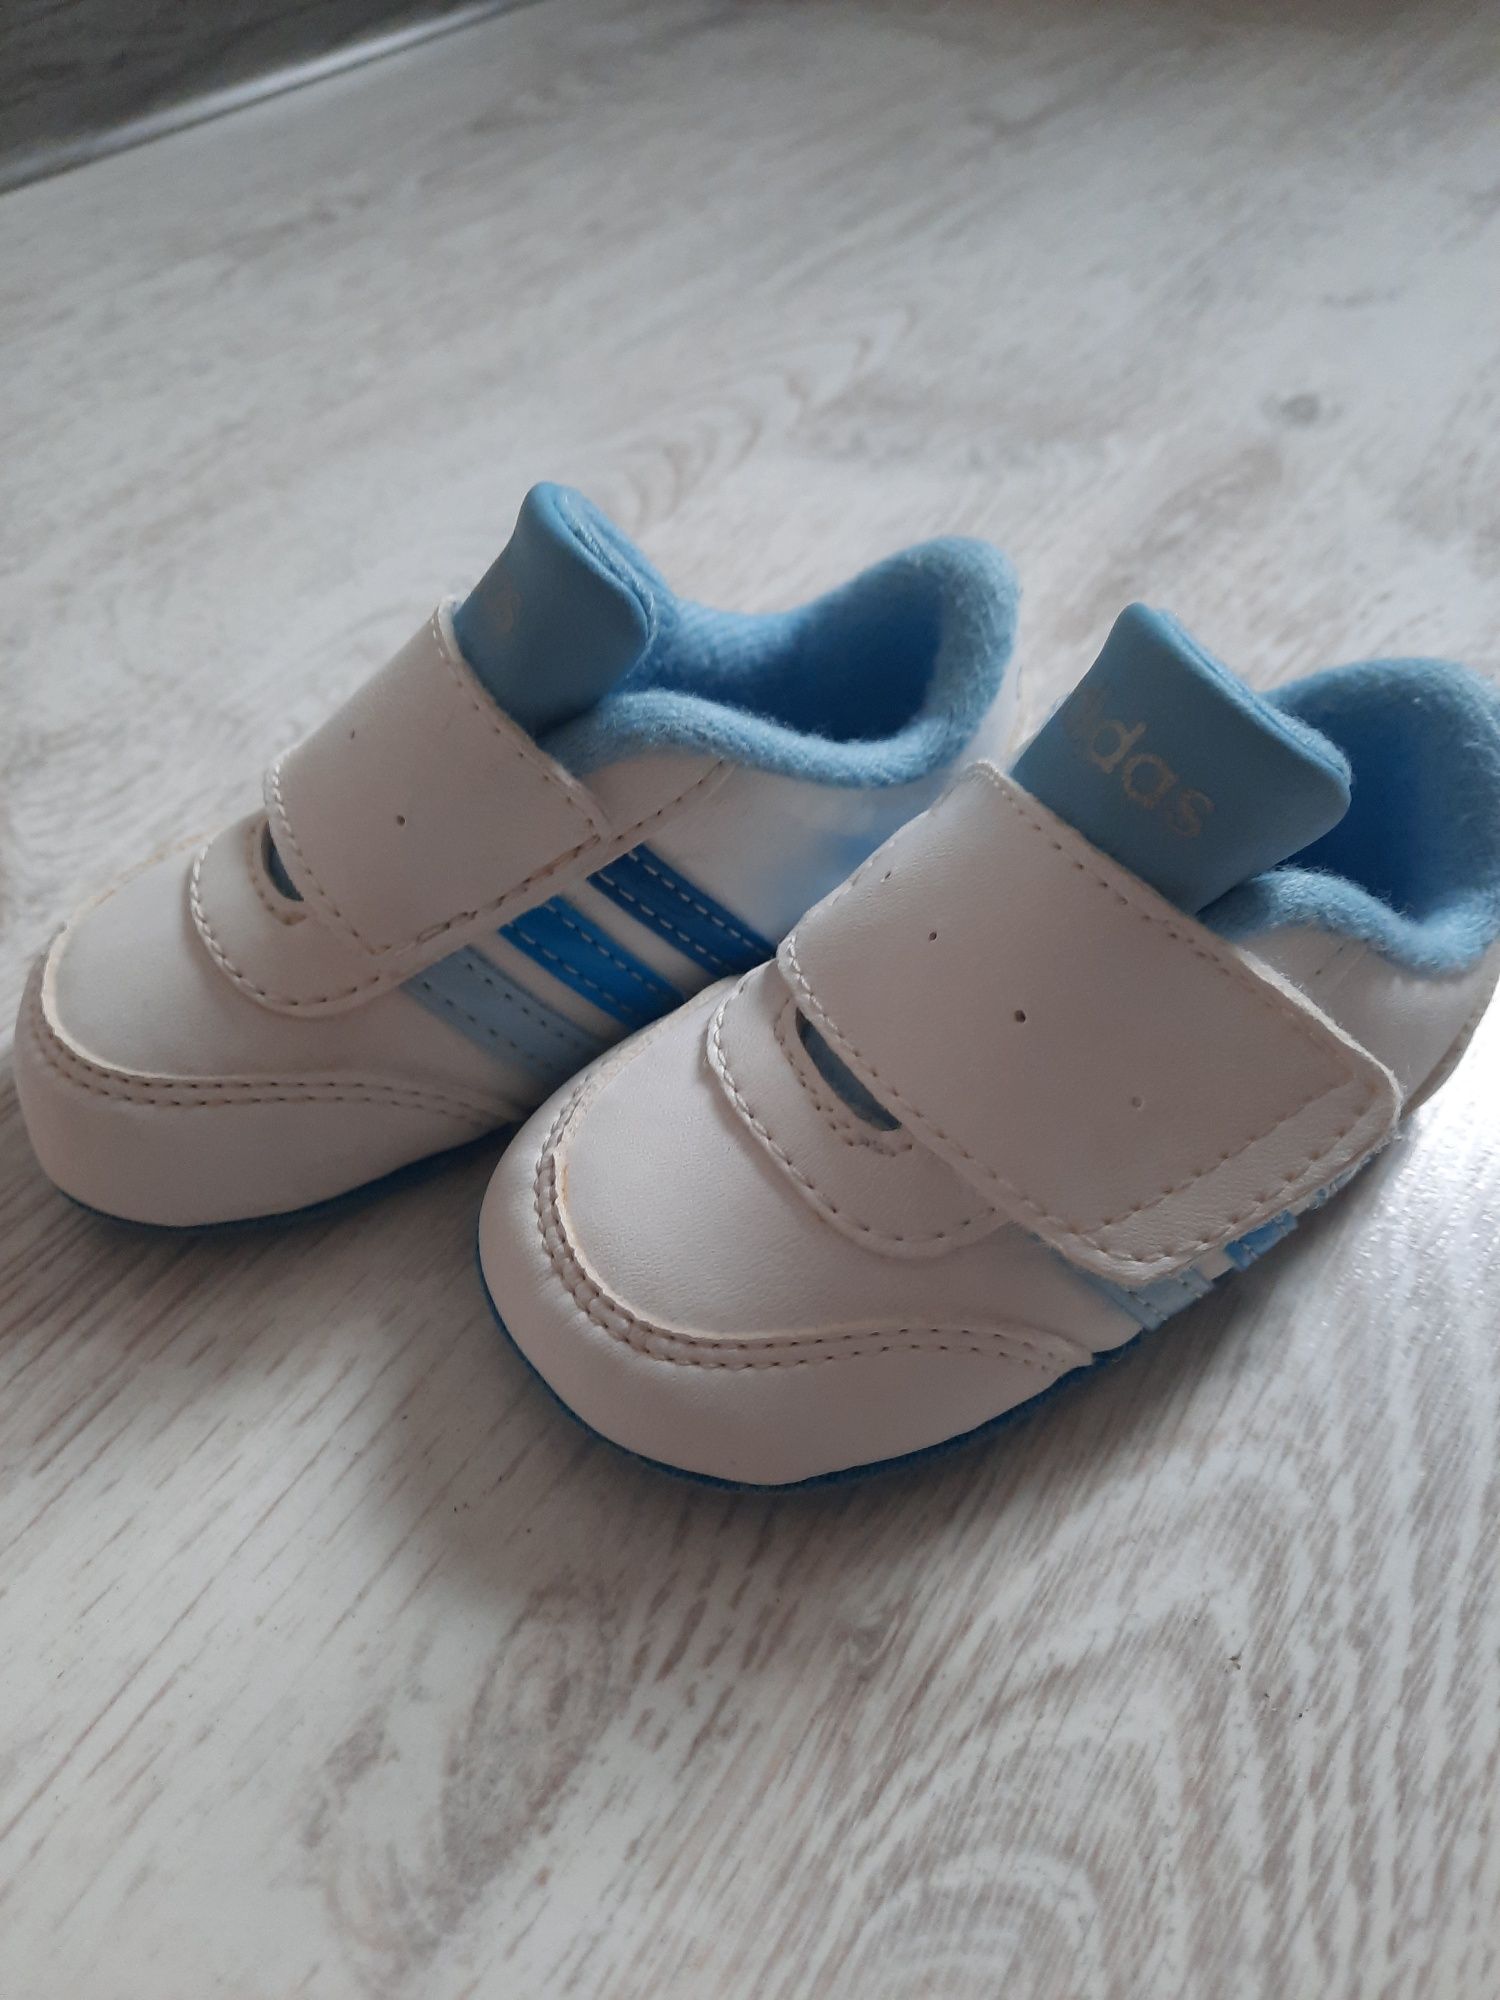 Adidas buciki dla niemowlaka Jaworzno • OLX.pl